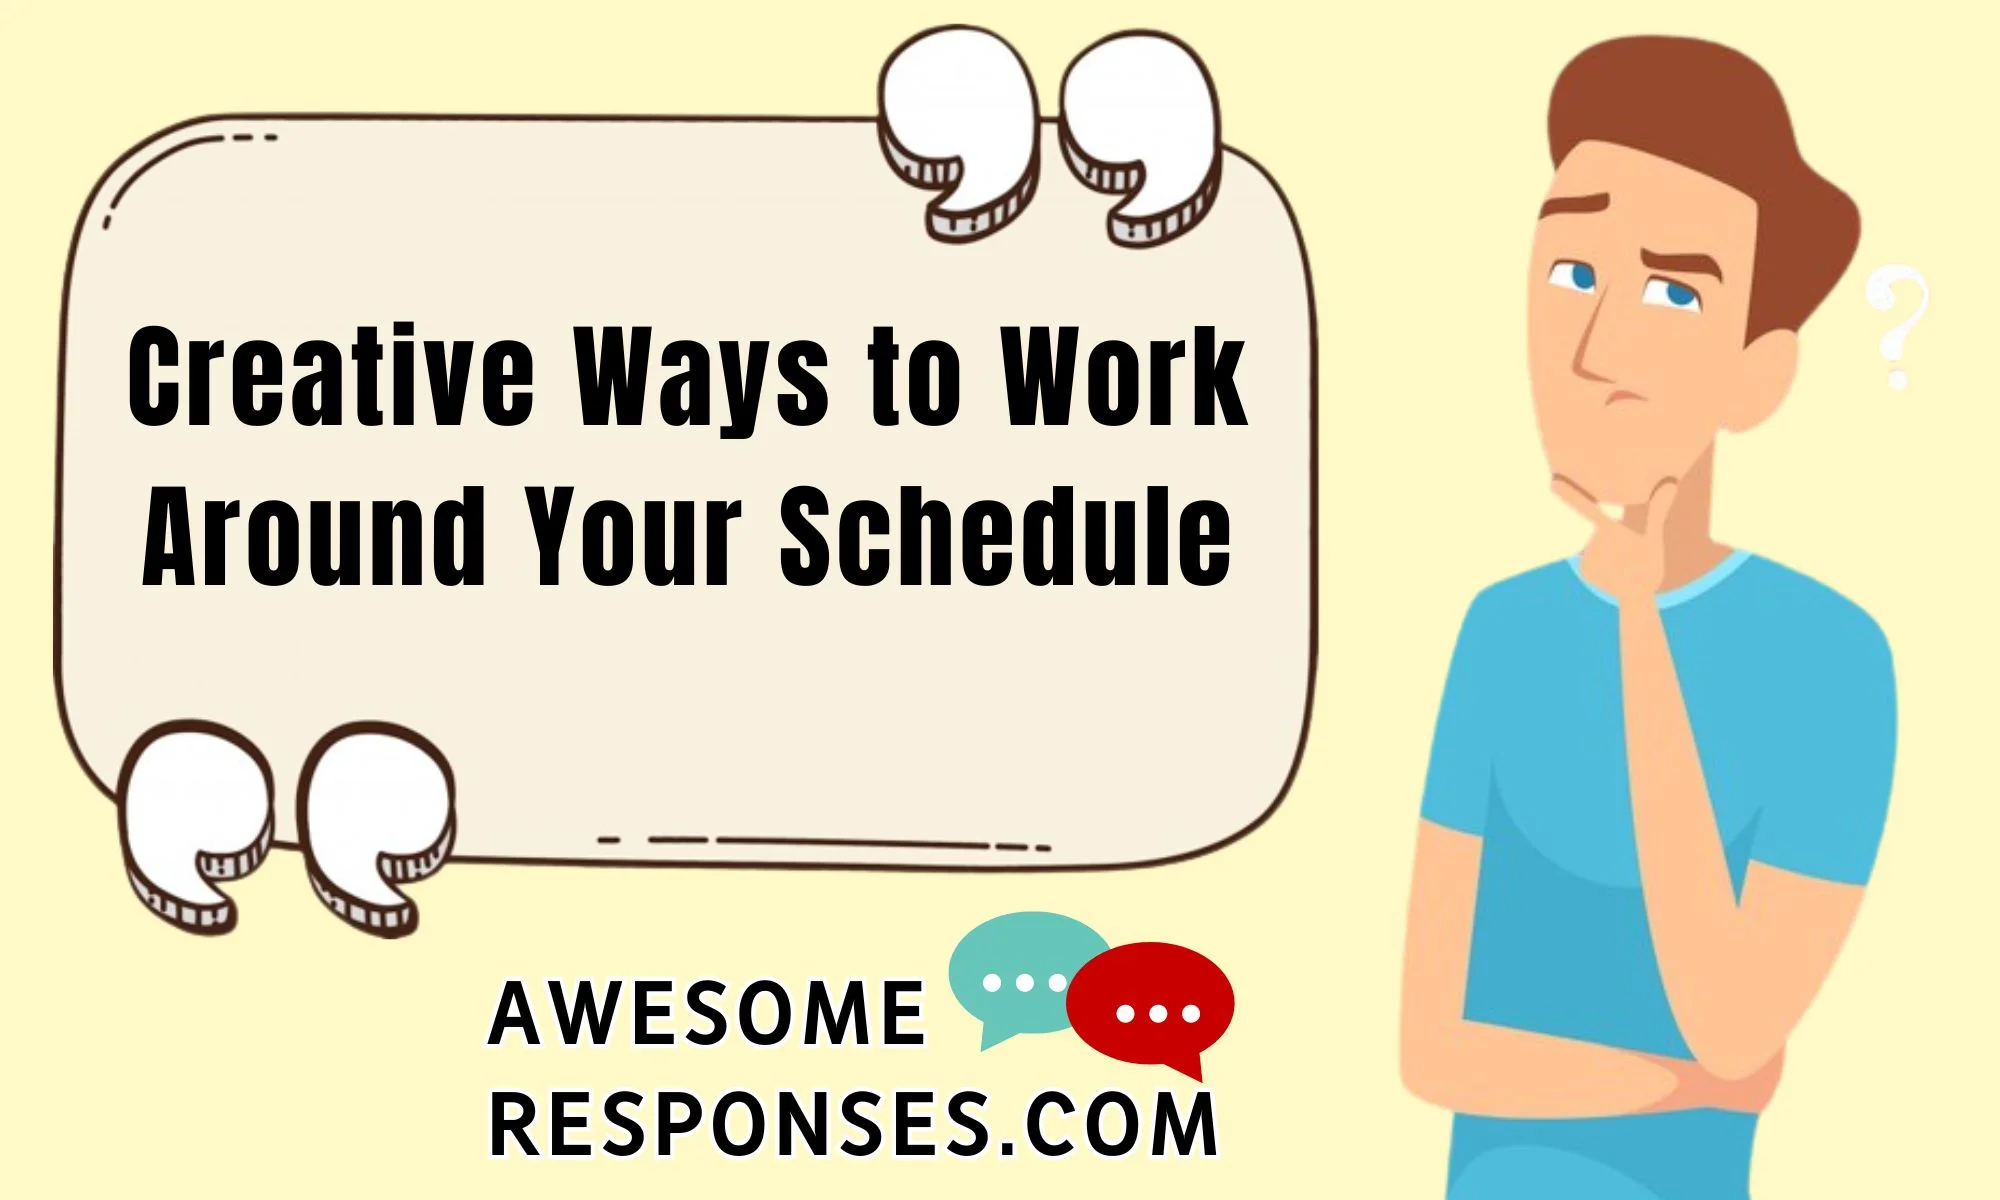 Creative Ways to Work Around Your Schedule